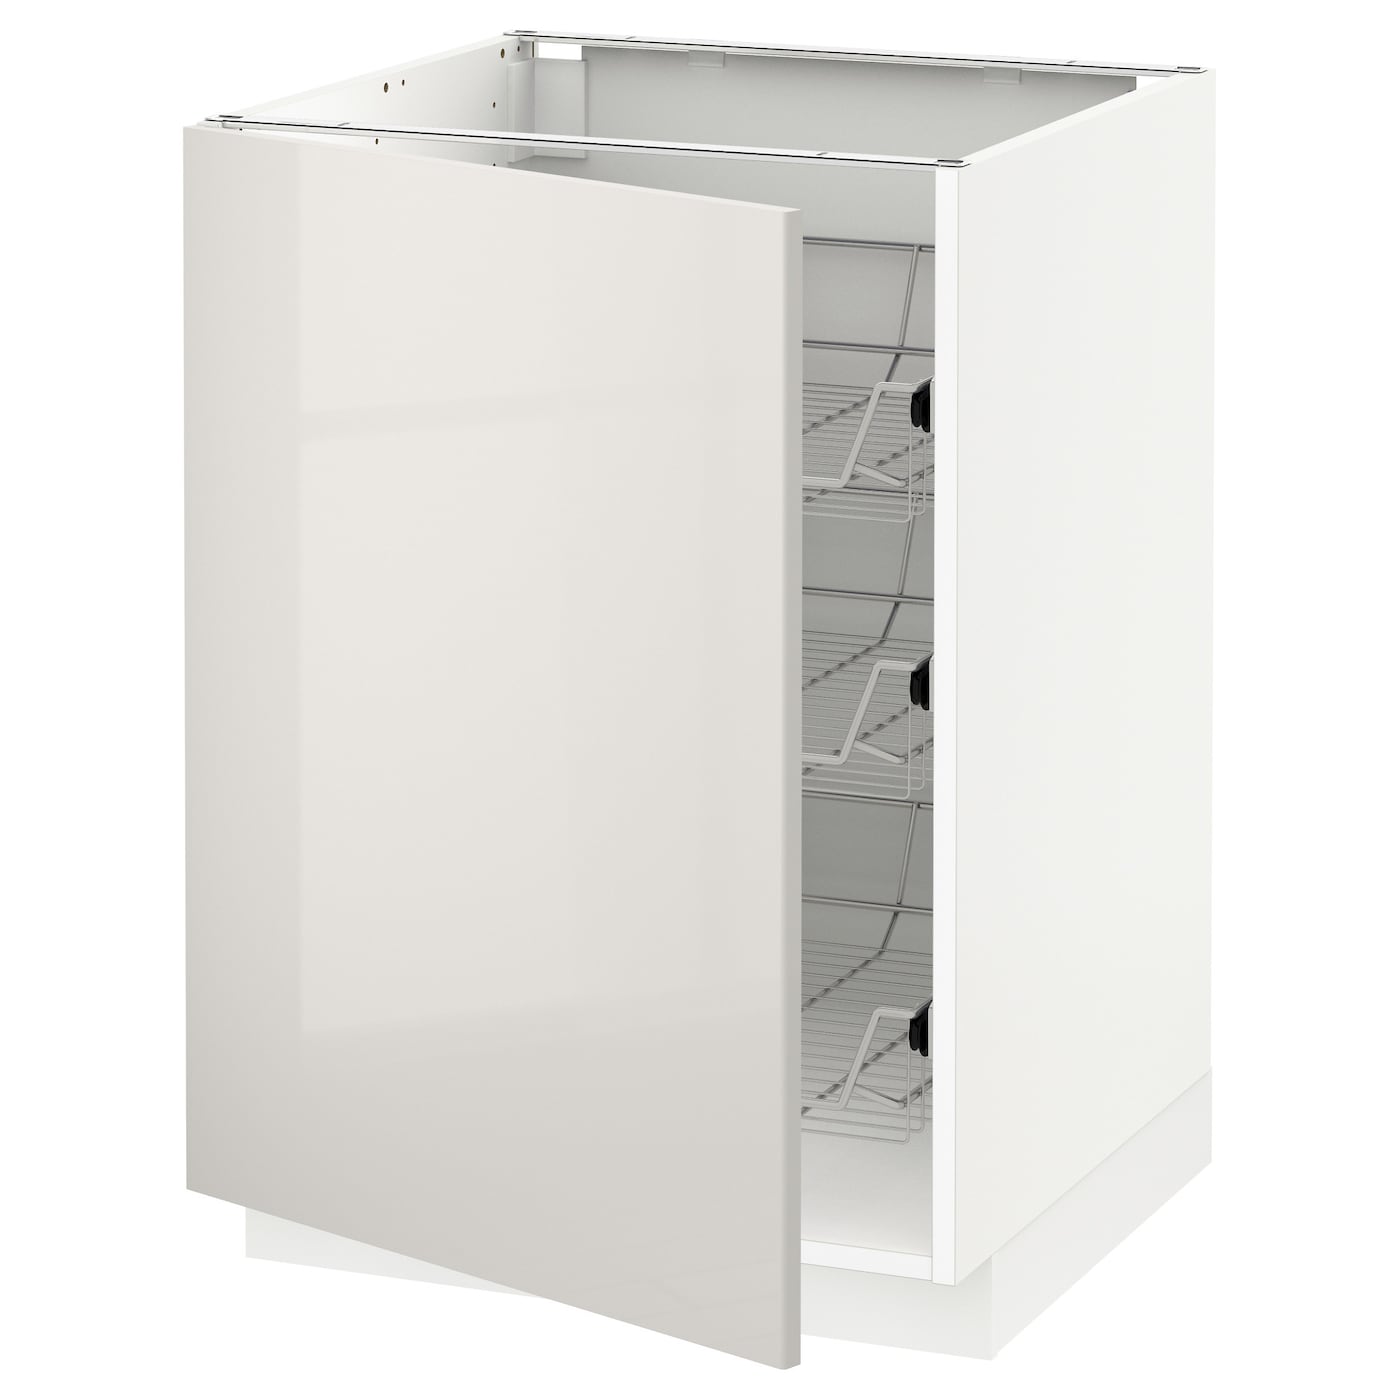 Напольный шкаф  - IKEA METOD, 88x62x60см, белый/светло-серый, МЕТОД ИКЕА